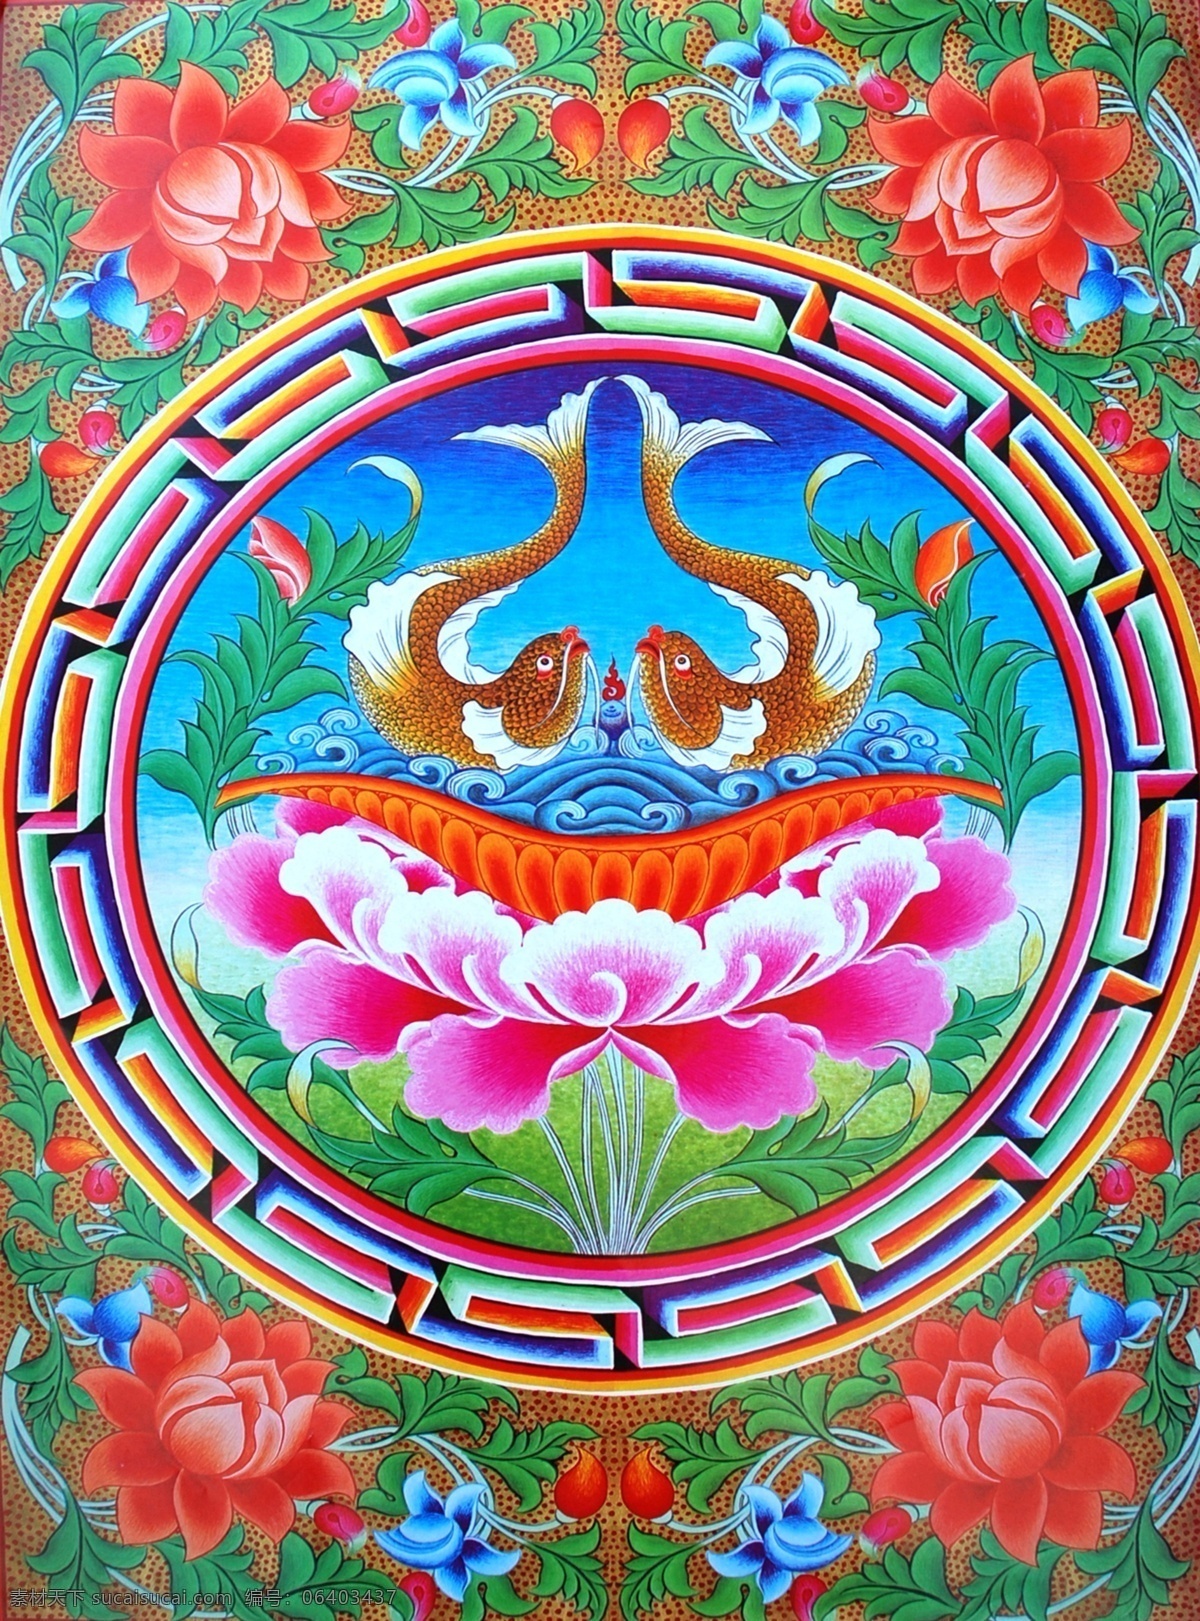 无框画 佛教 手绘 墙画 壁画 卧室画 绘画 吉祥 图案 藏族 宗教 和平 平安 宗教设计 藏族传统图案 吉祥八宝 绘画书法 文化艺术